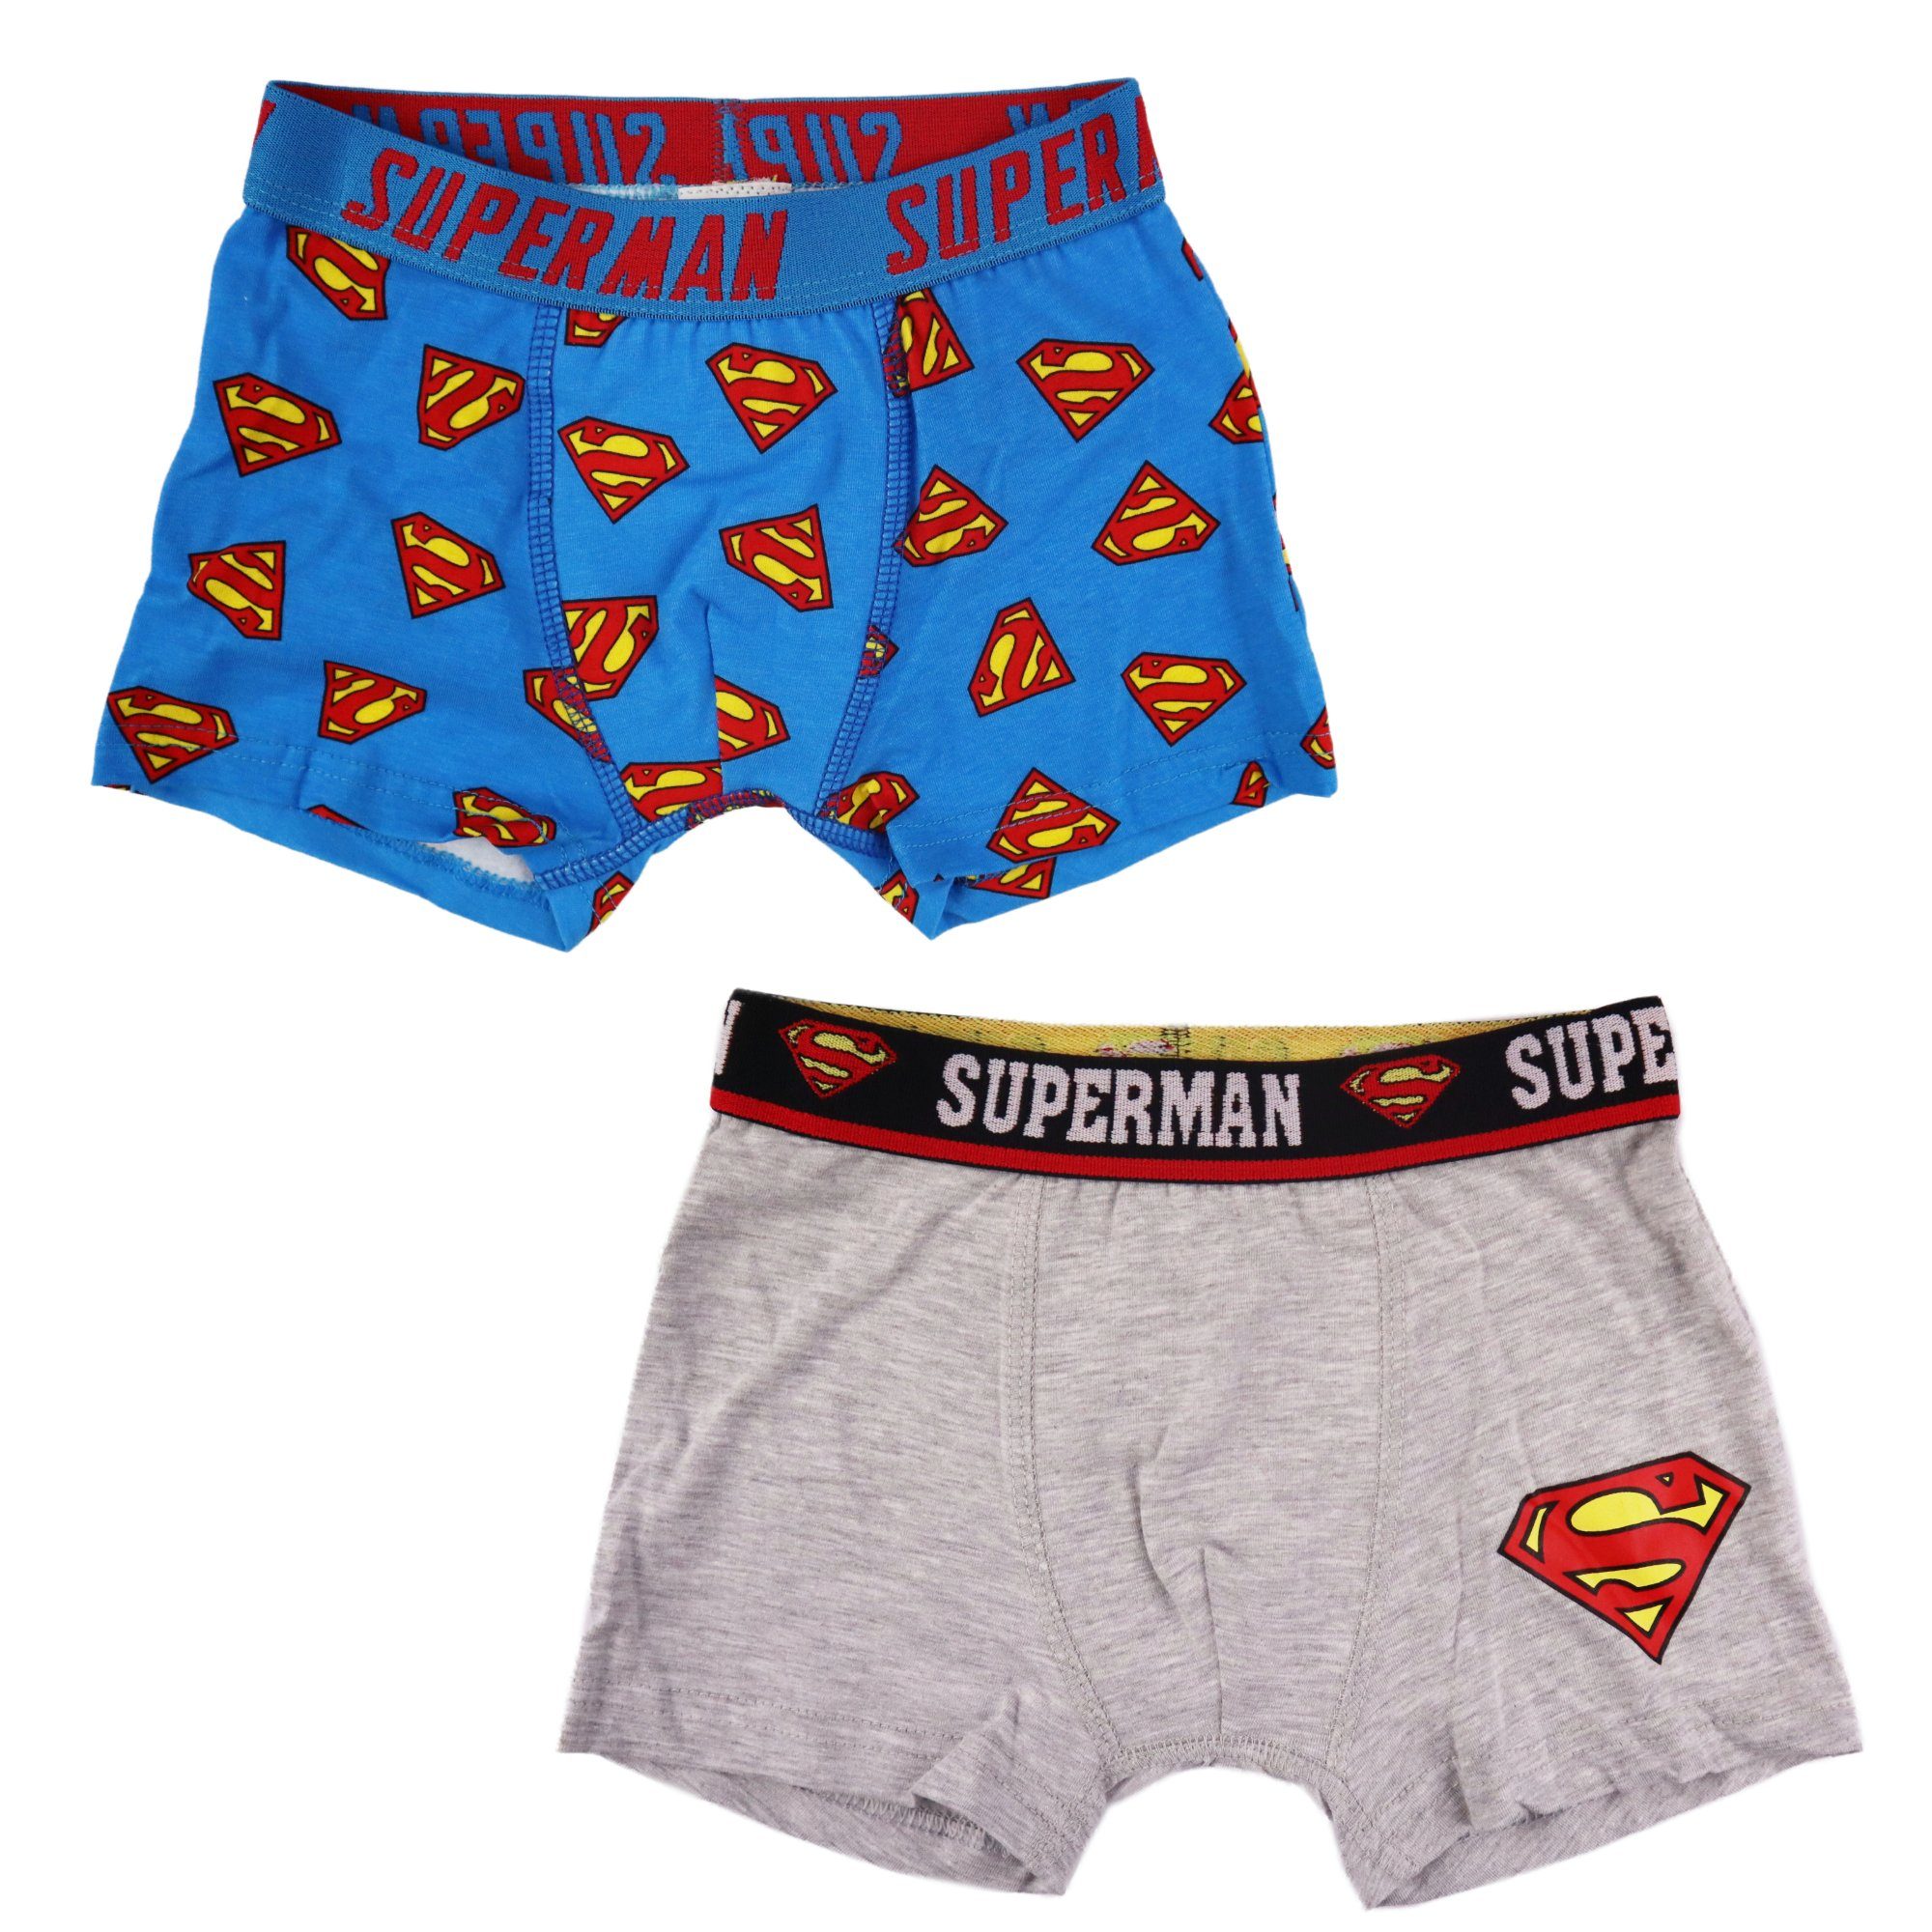 DC Comics Boxershorts Superman Kinder Jungen Boxershorts 2er Pack Gr. 116 bis 146